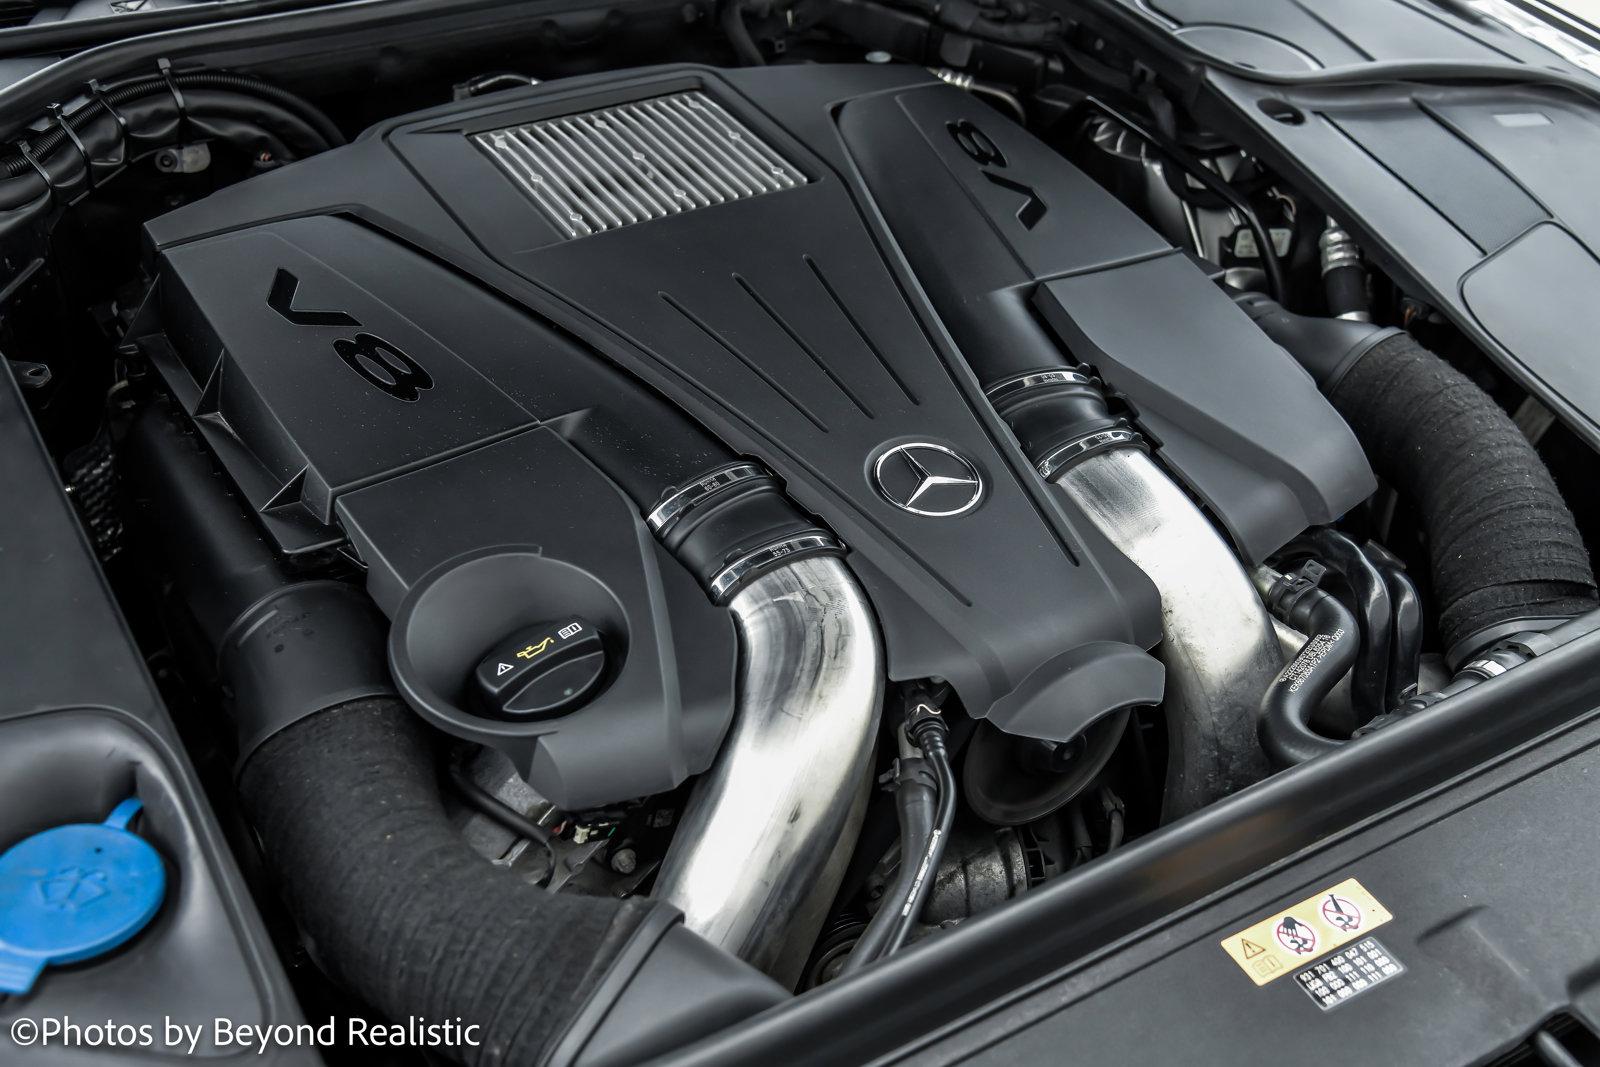 Used 2014 Mercedes-Benz S-Class S 550, Premium 1 Pkg, Sport Pkg | Downers Grove, IL